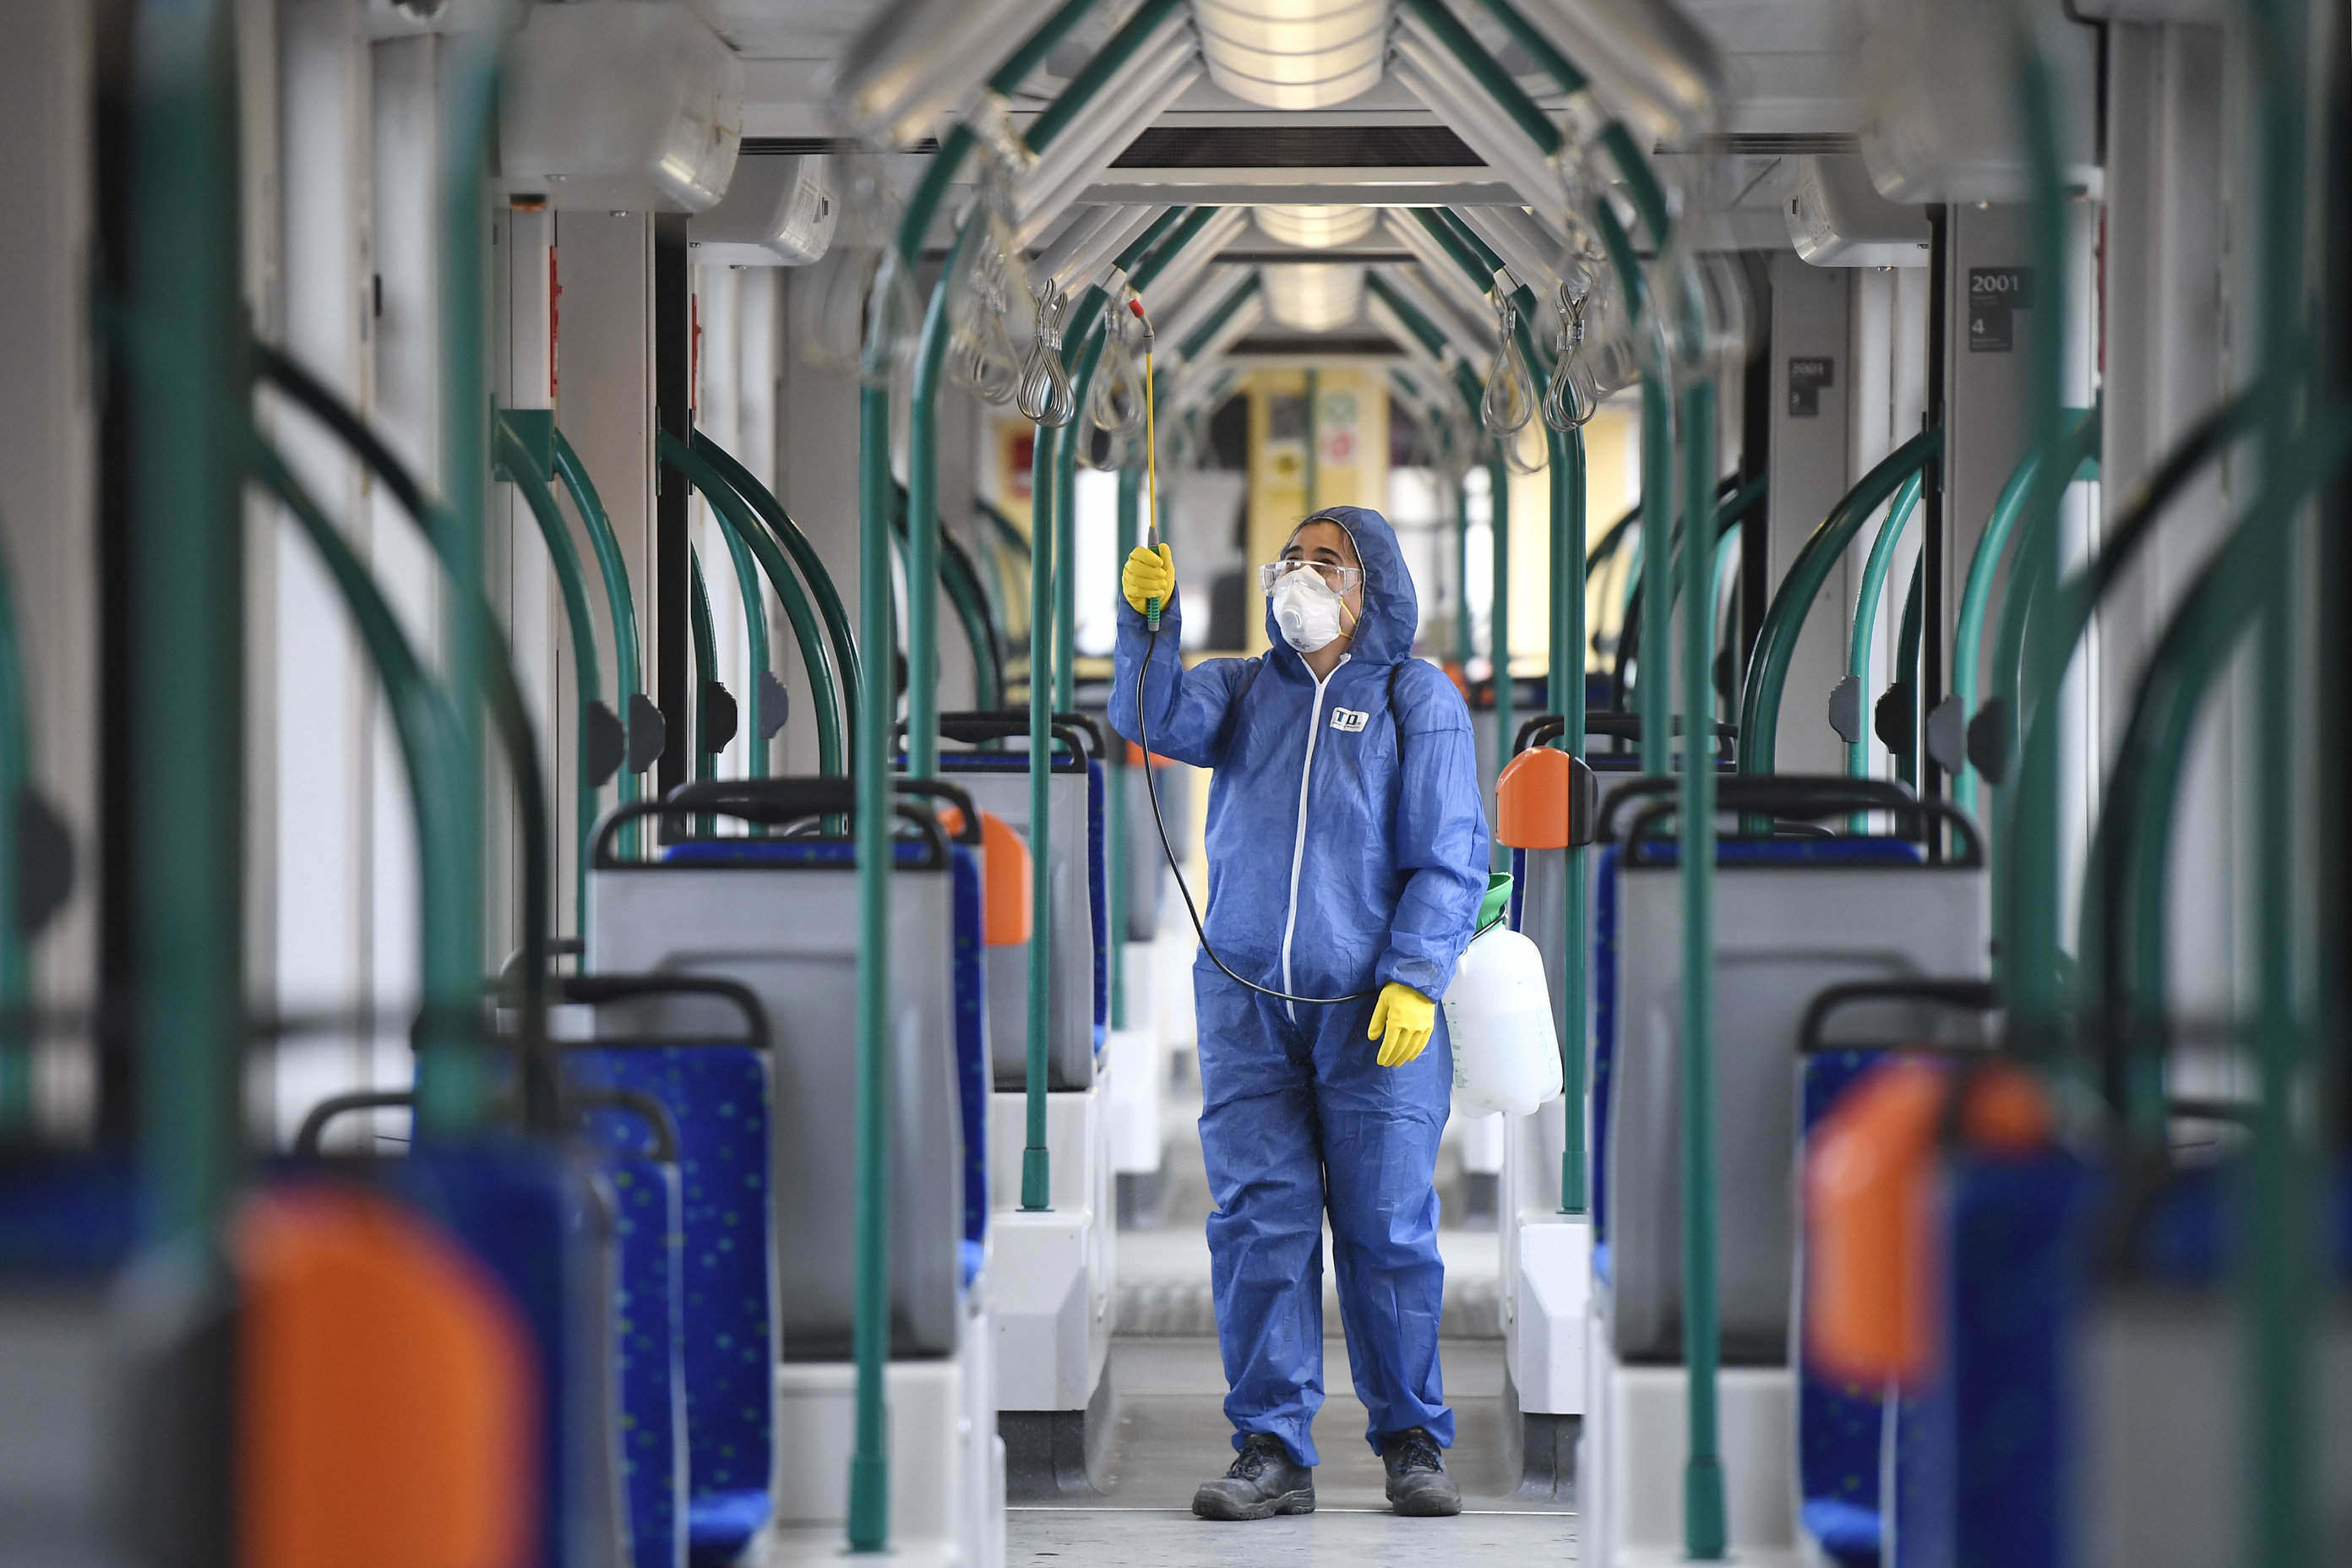 coronavirus cleaning trams